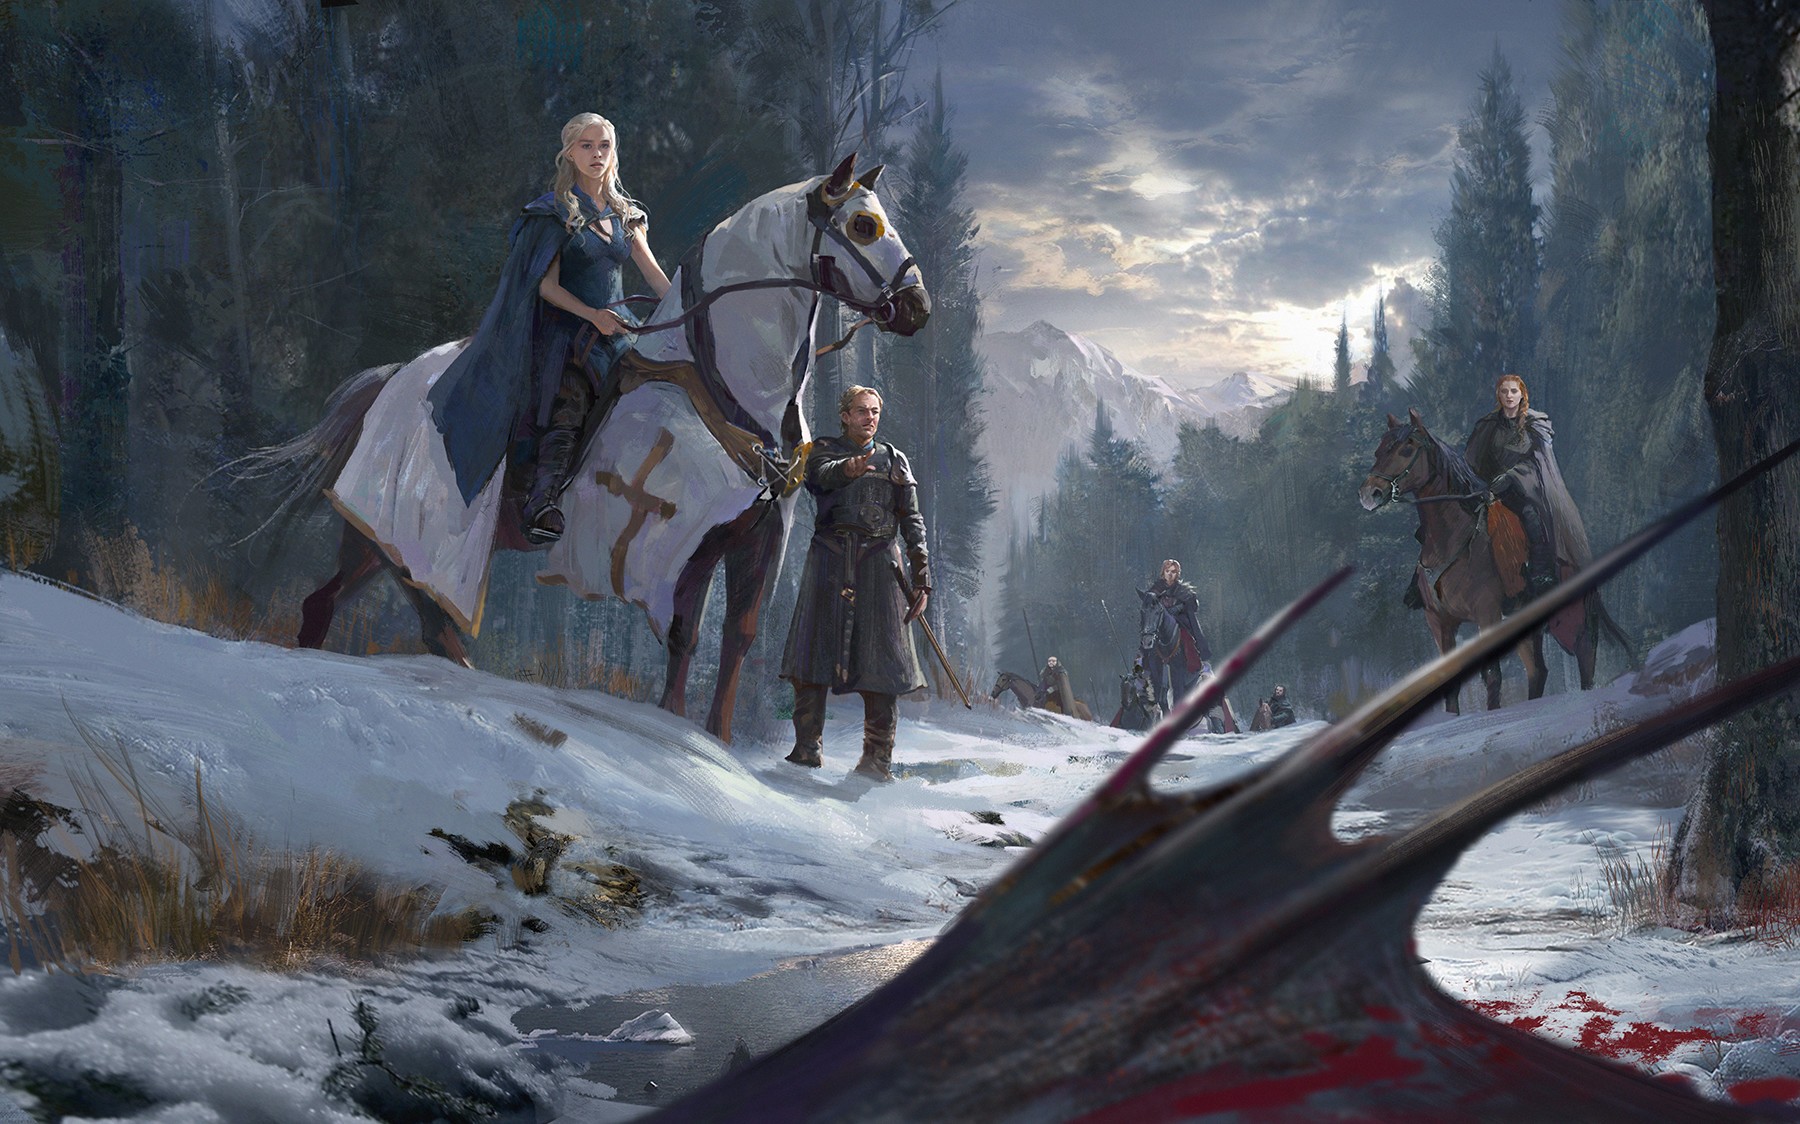 warrior, Daenerys Targaryen, Jorah Mormont, Dragon, Game of Thrones Wallpaper